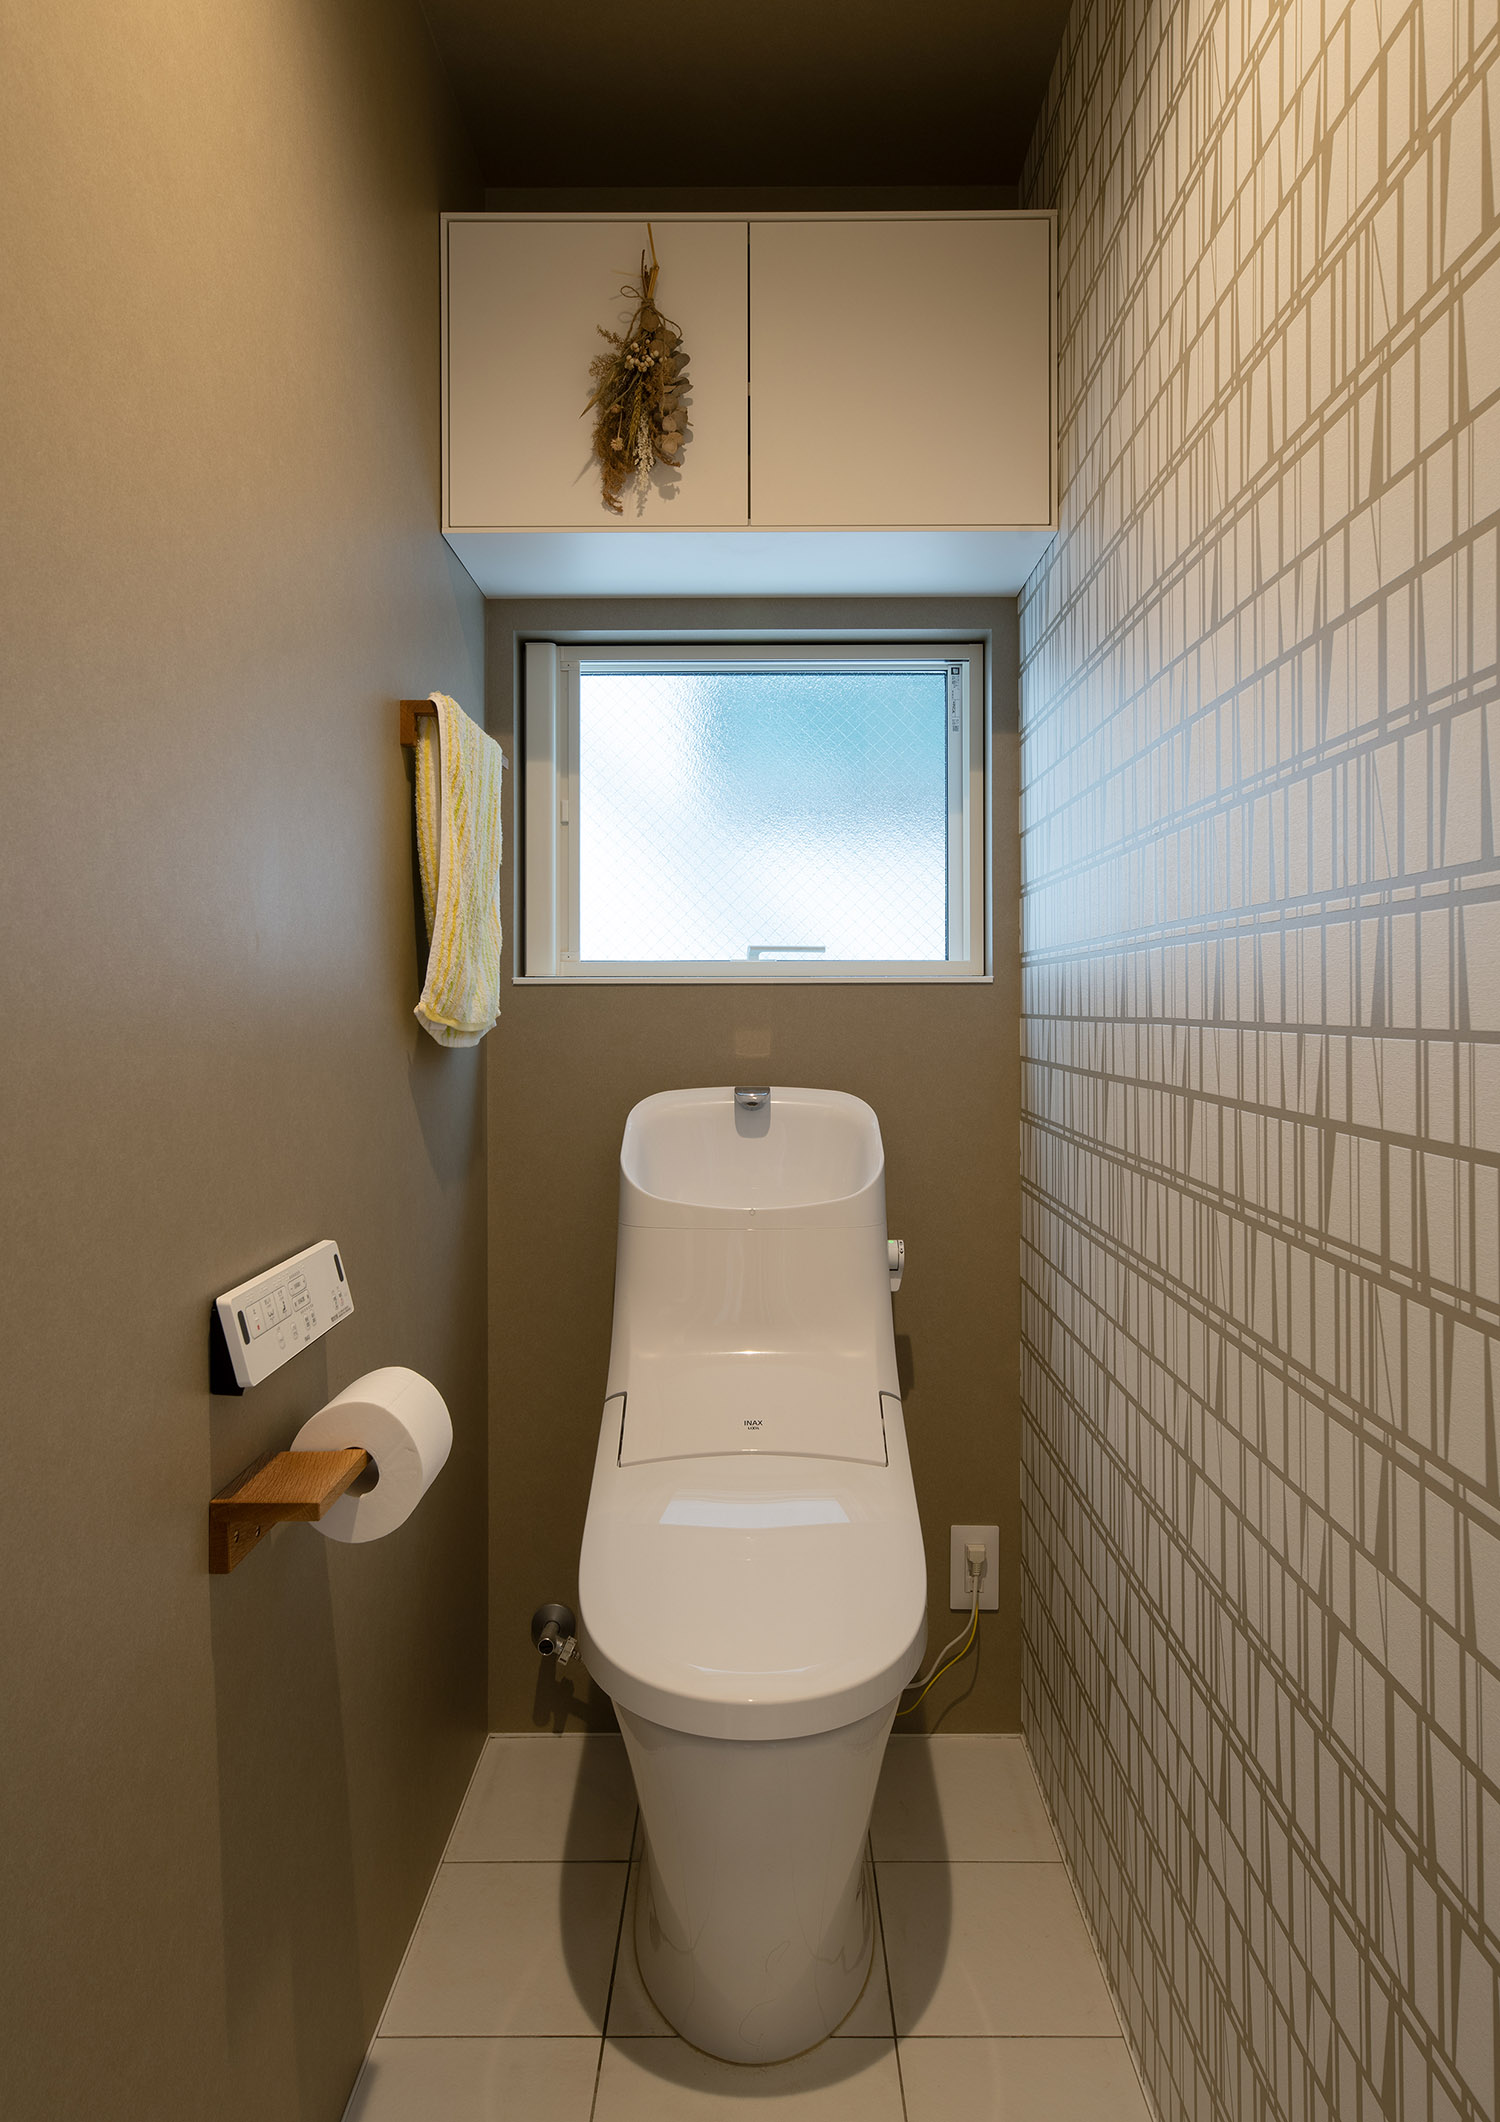 曇りガラスの窓から光が入る、アクセントクロスを設けた明るいトイレ・デザイン住宅